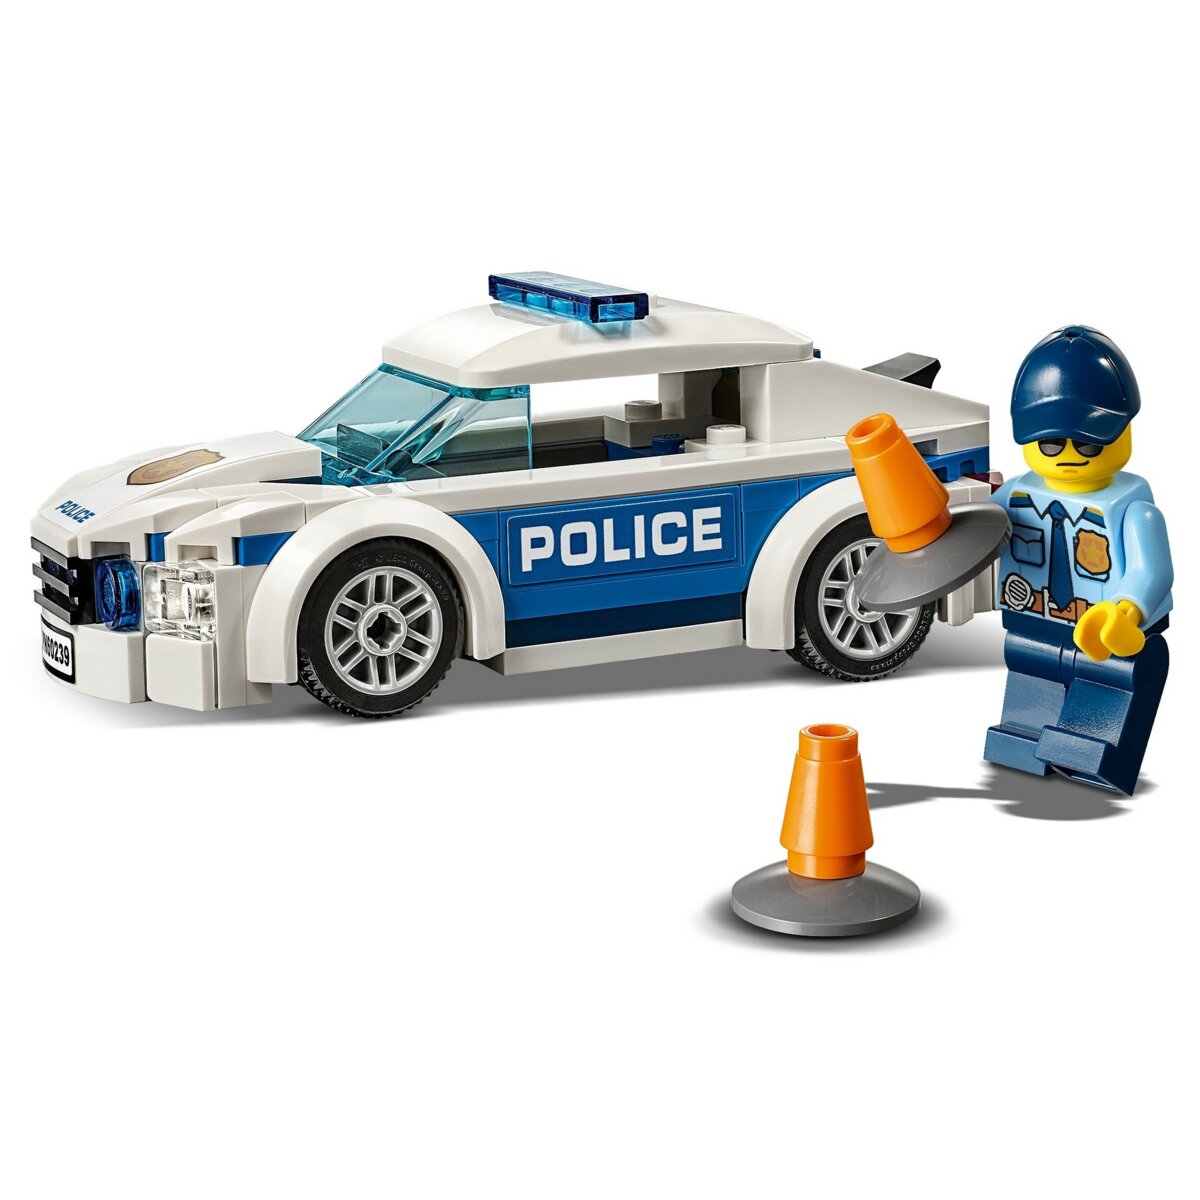 LEGO City Samochód policyjny 60239 ceny i opinie w Media